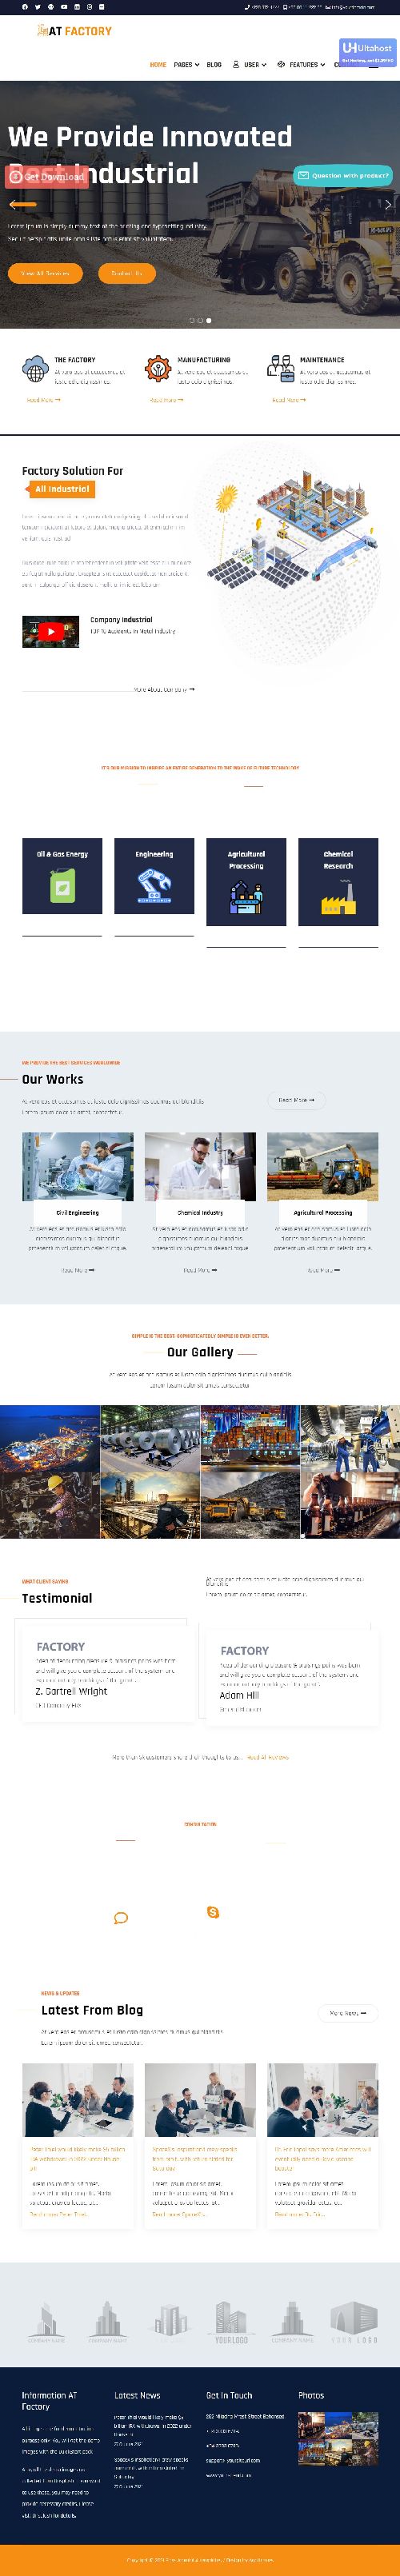 Factory - Business Industrial Joomla Template Website